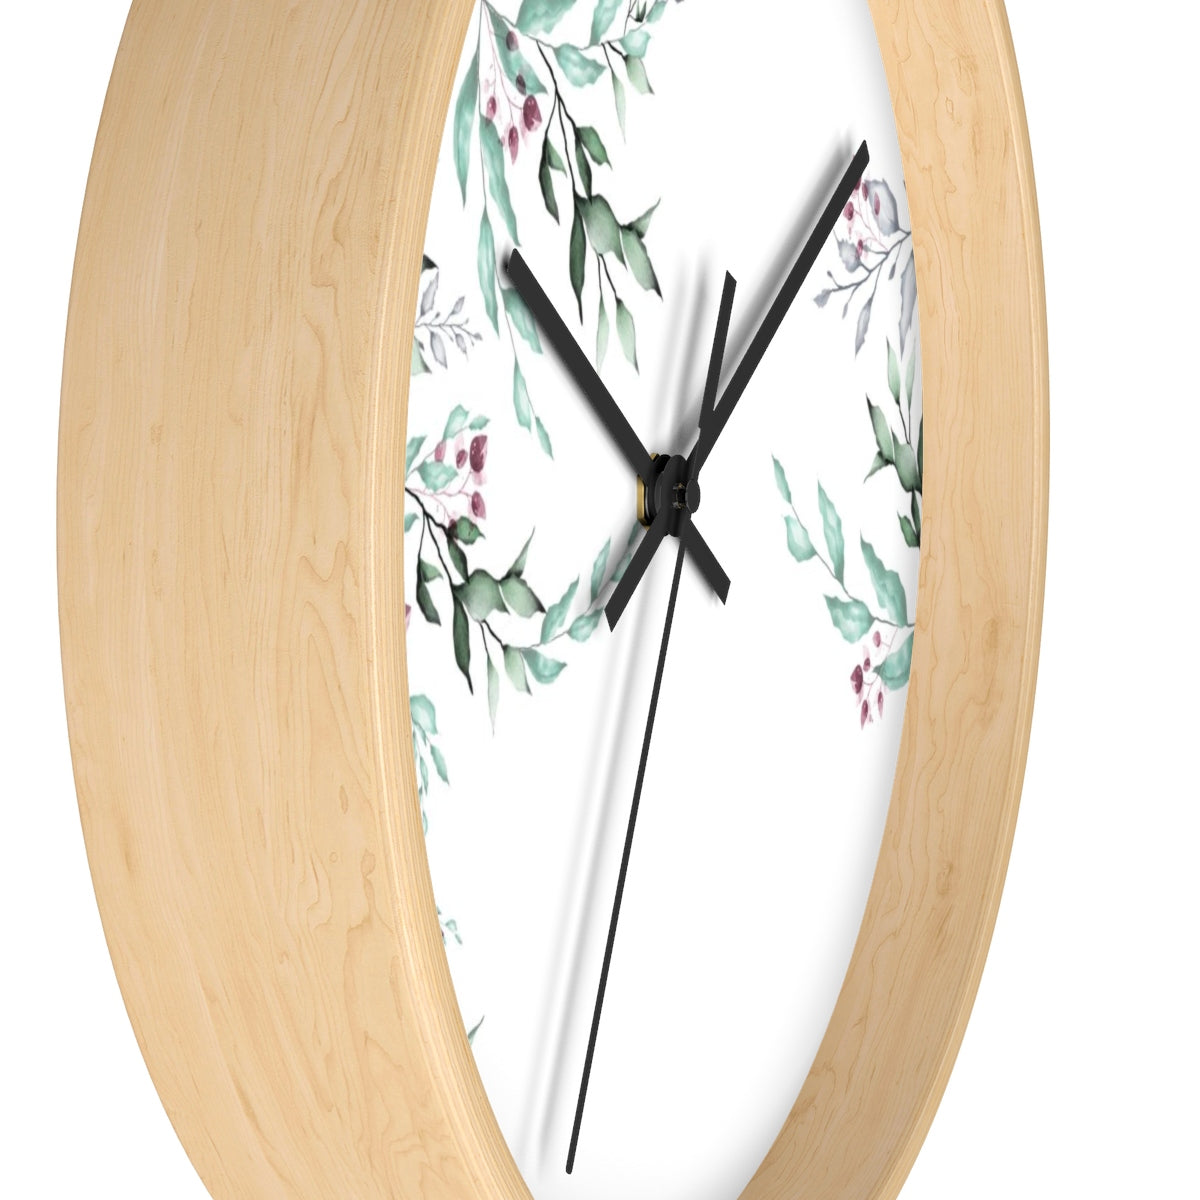 Minimalist Wall Clock - Liz Kapiloto Art & Design